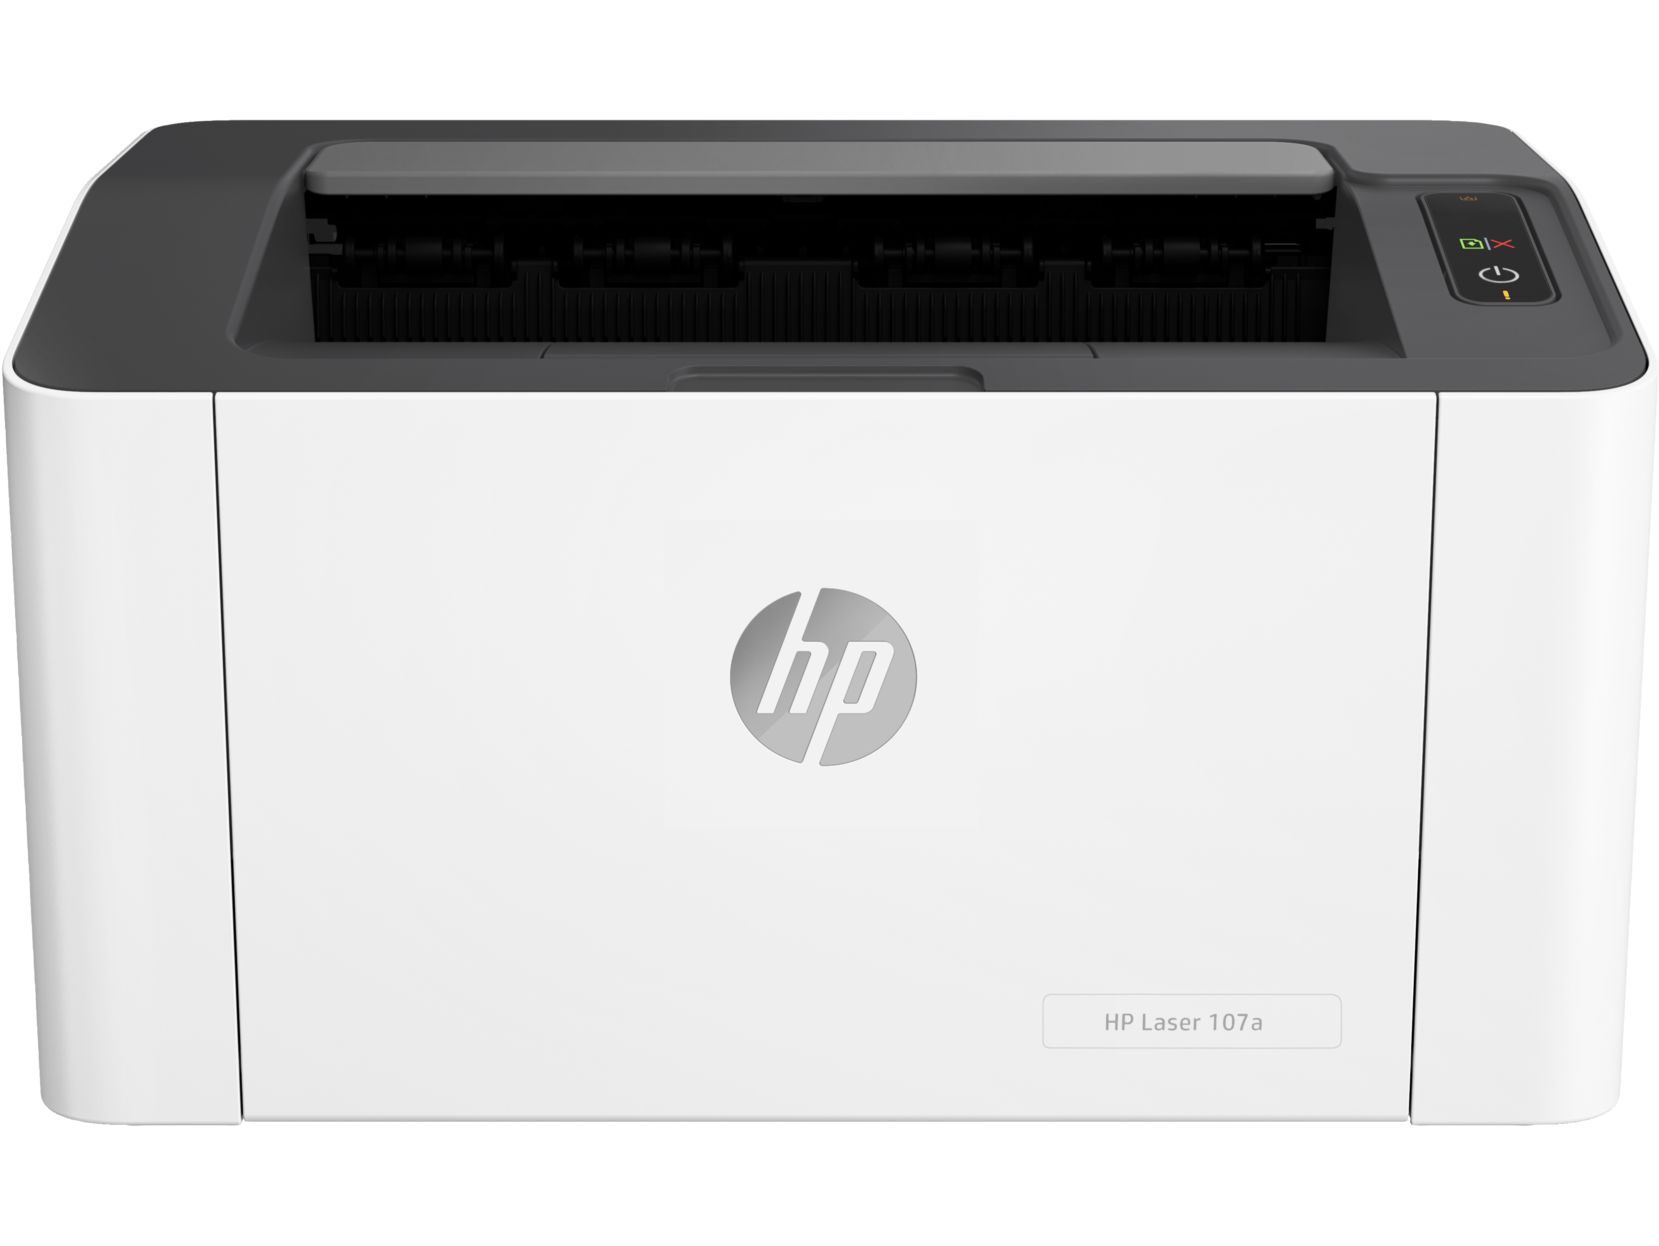 Принтер HP Laser 107a принтер hp laserjet 107a